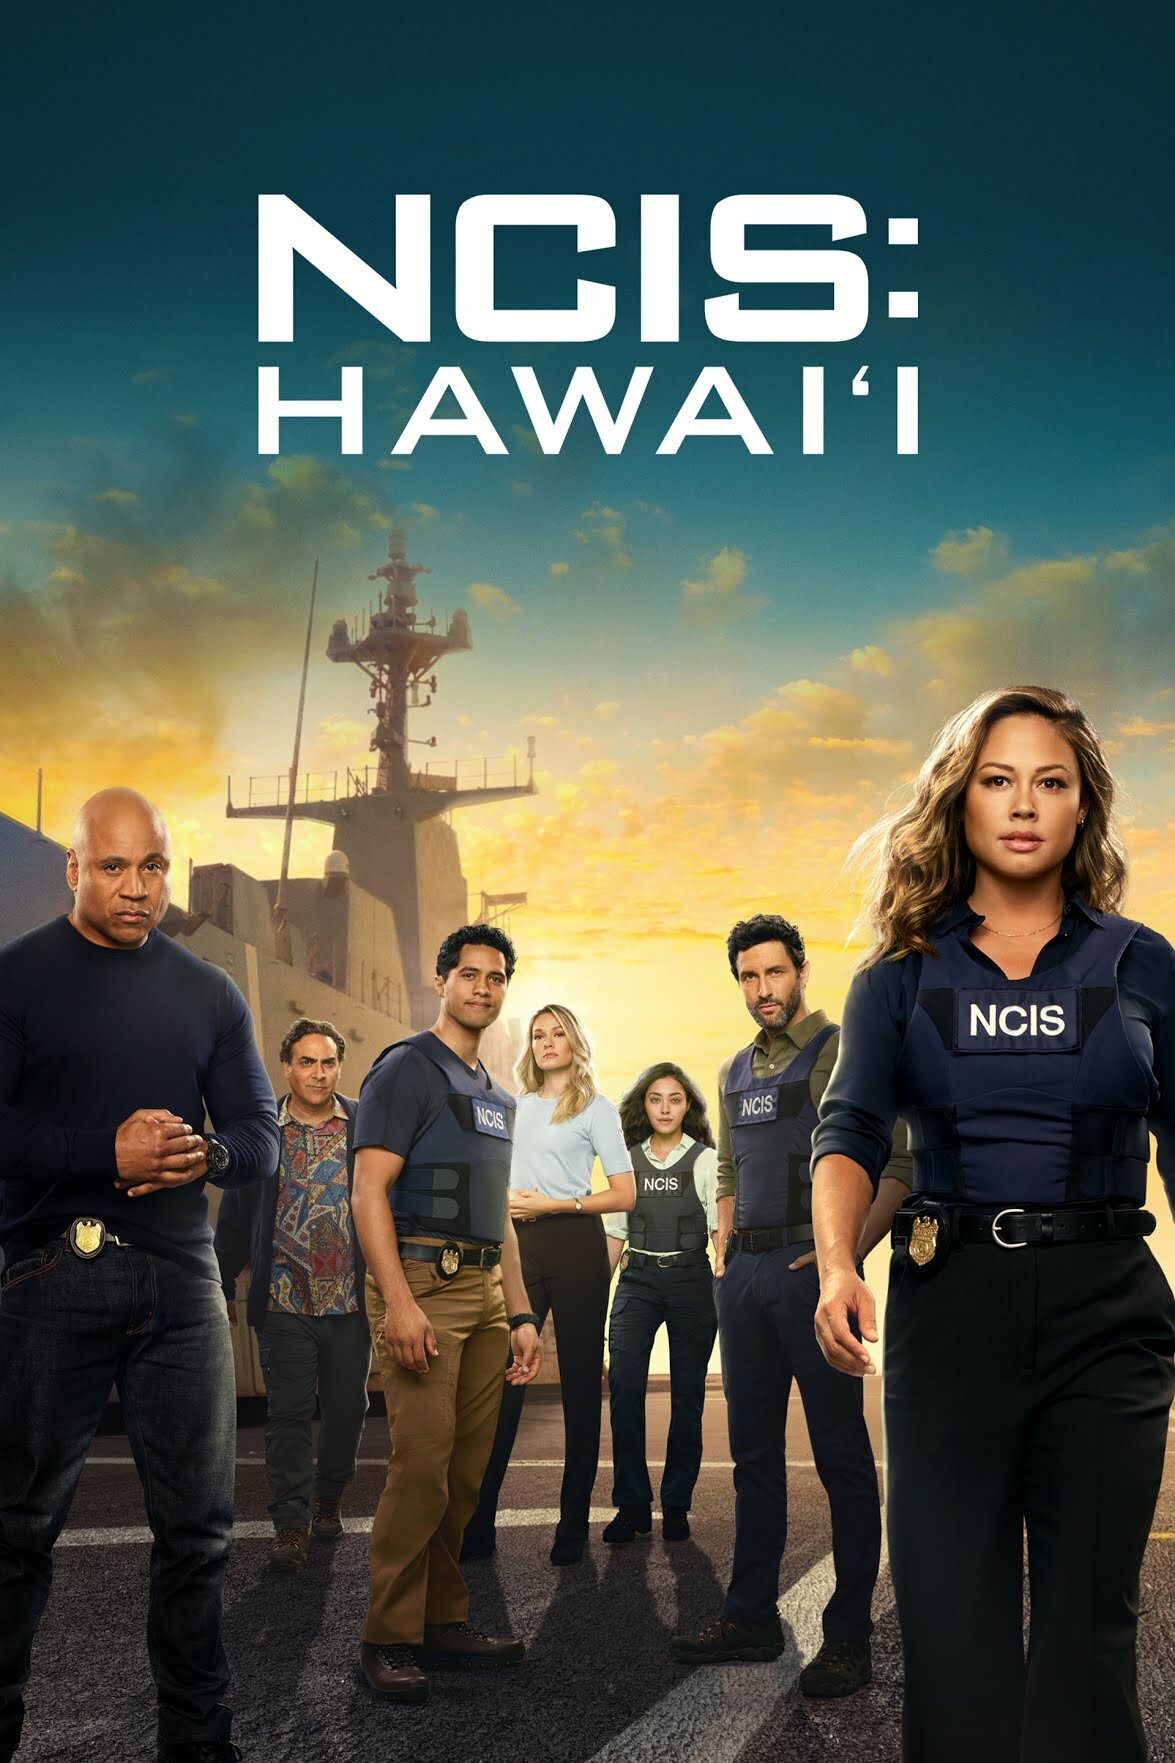 NCIS Hawaii S03E09 720p HDTV x264-SYNCOPY